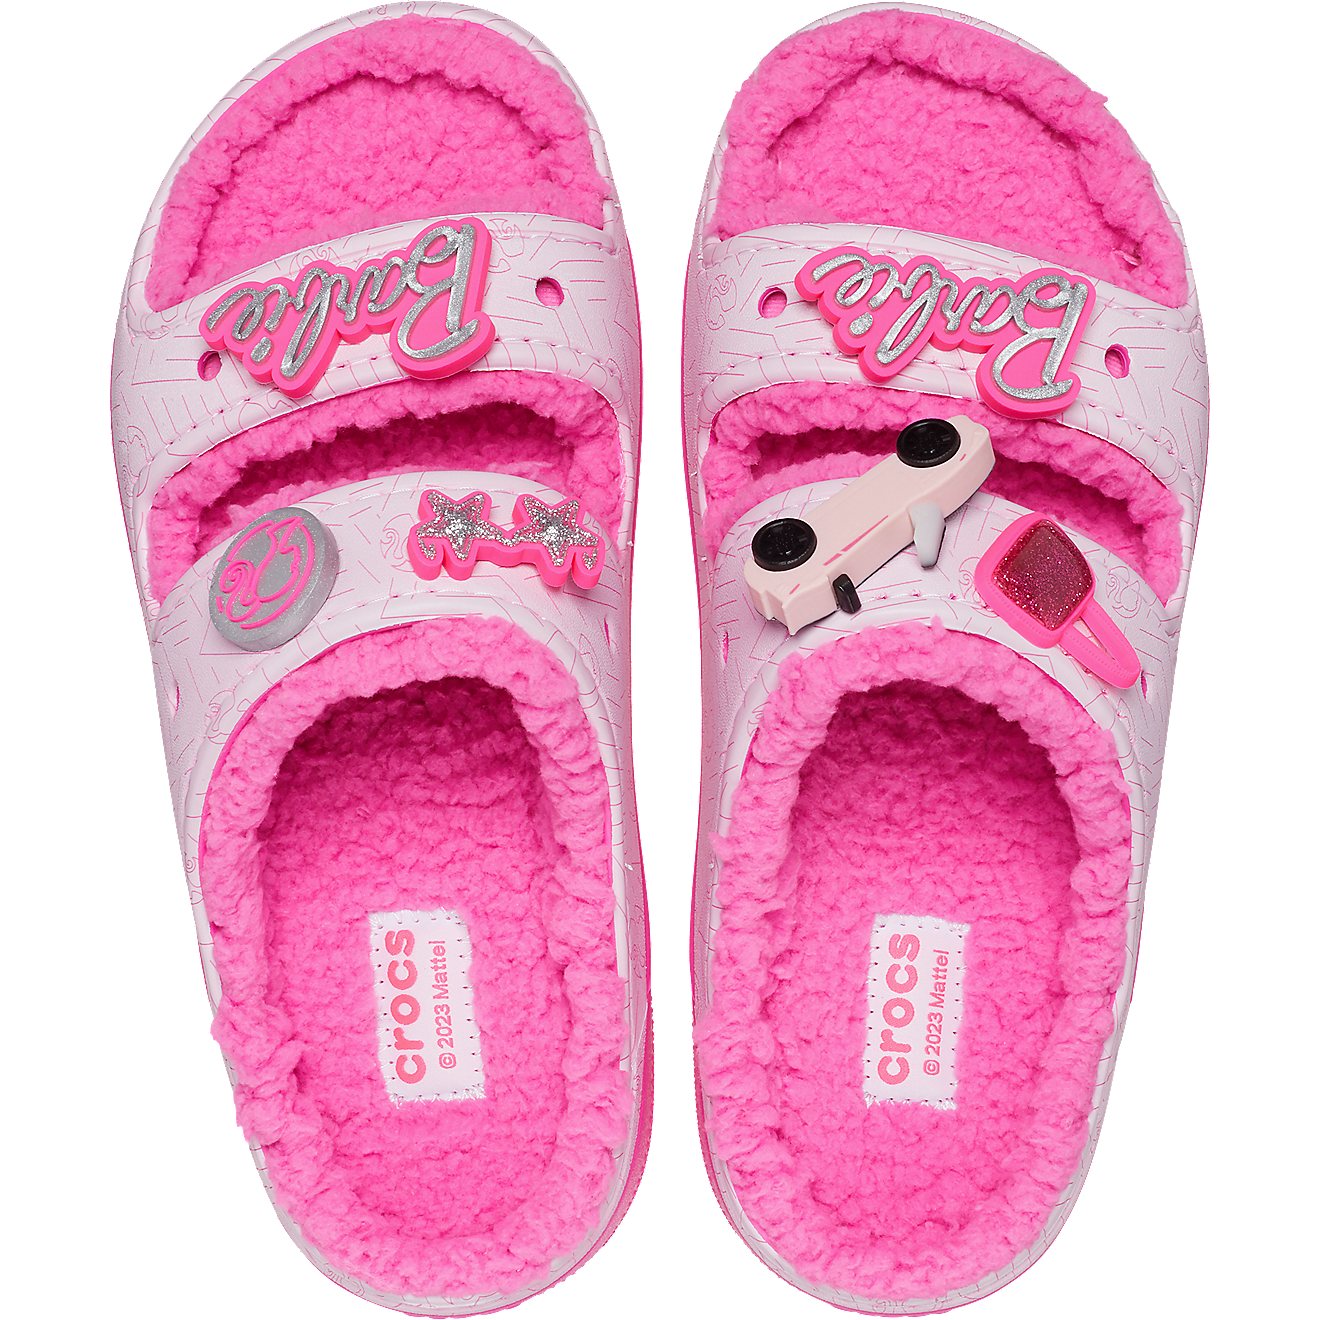 Crocs Adults' Classic Barbie Cozzzy Sandals